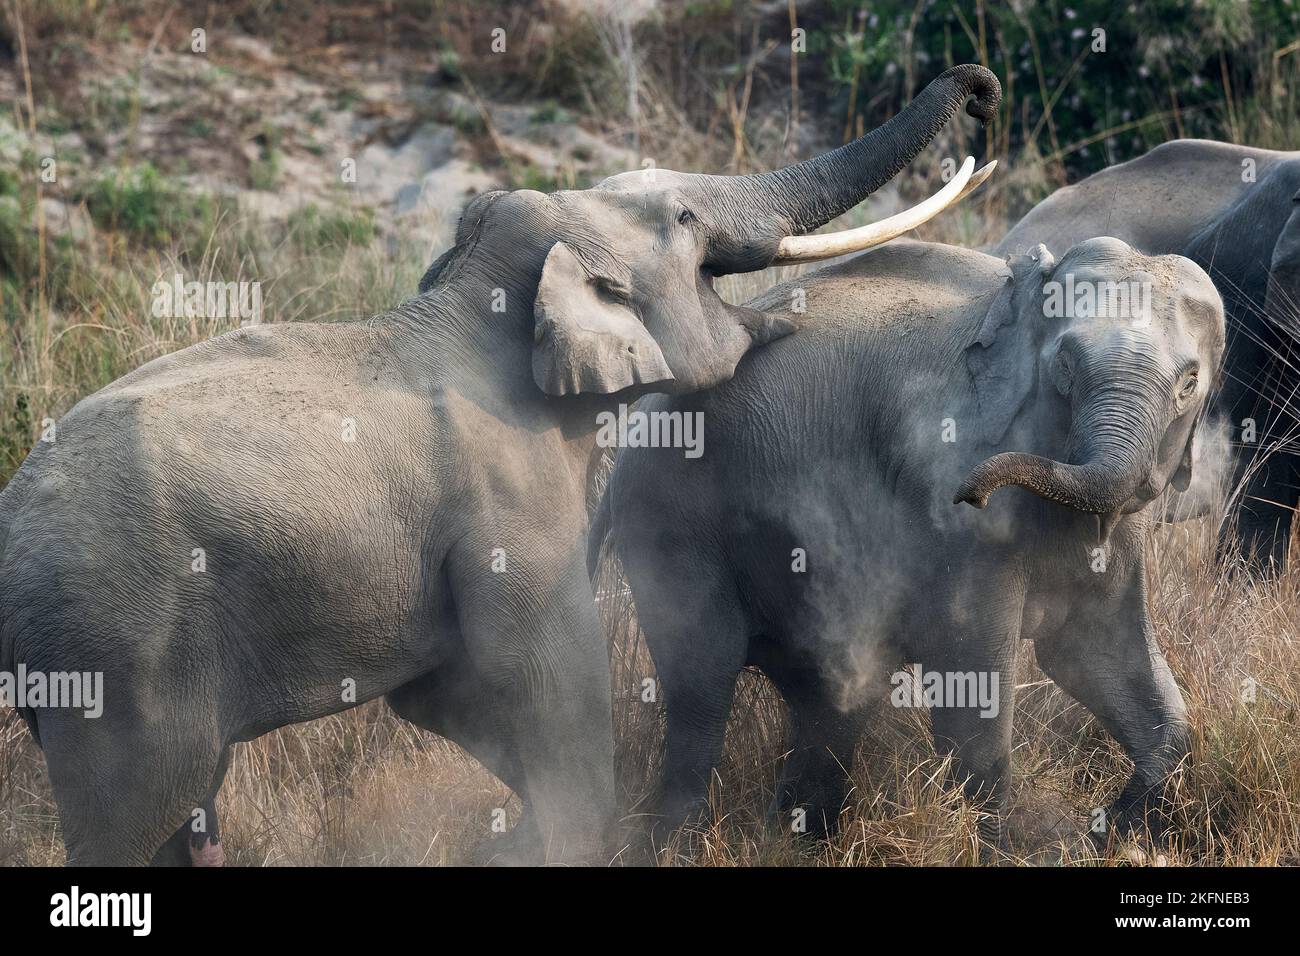 L'image de l'éléphant d'Asie (Elepha maximus) ws prise dans le parc national de Corbett, en Inde Banque D'Images